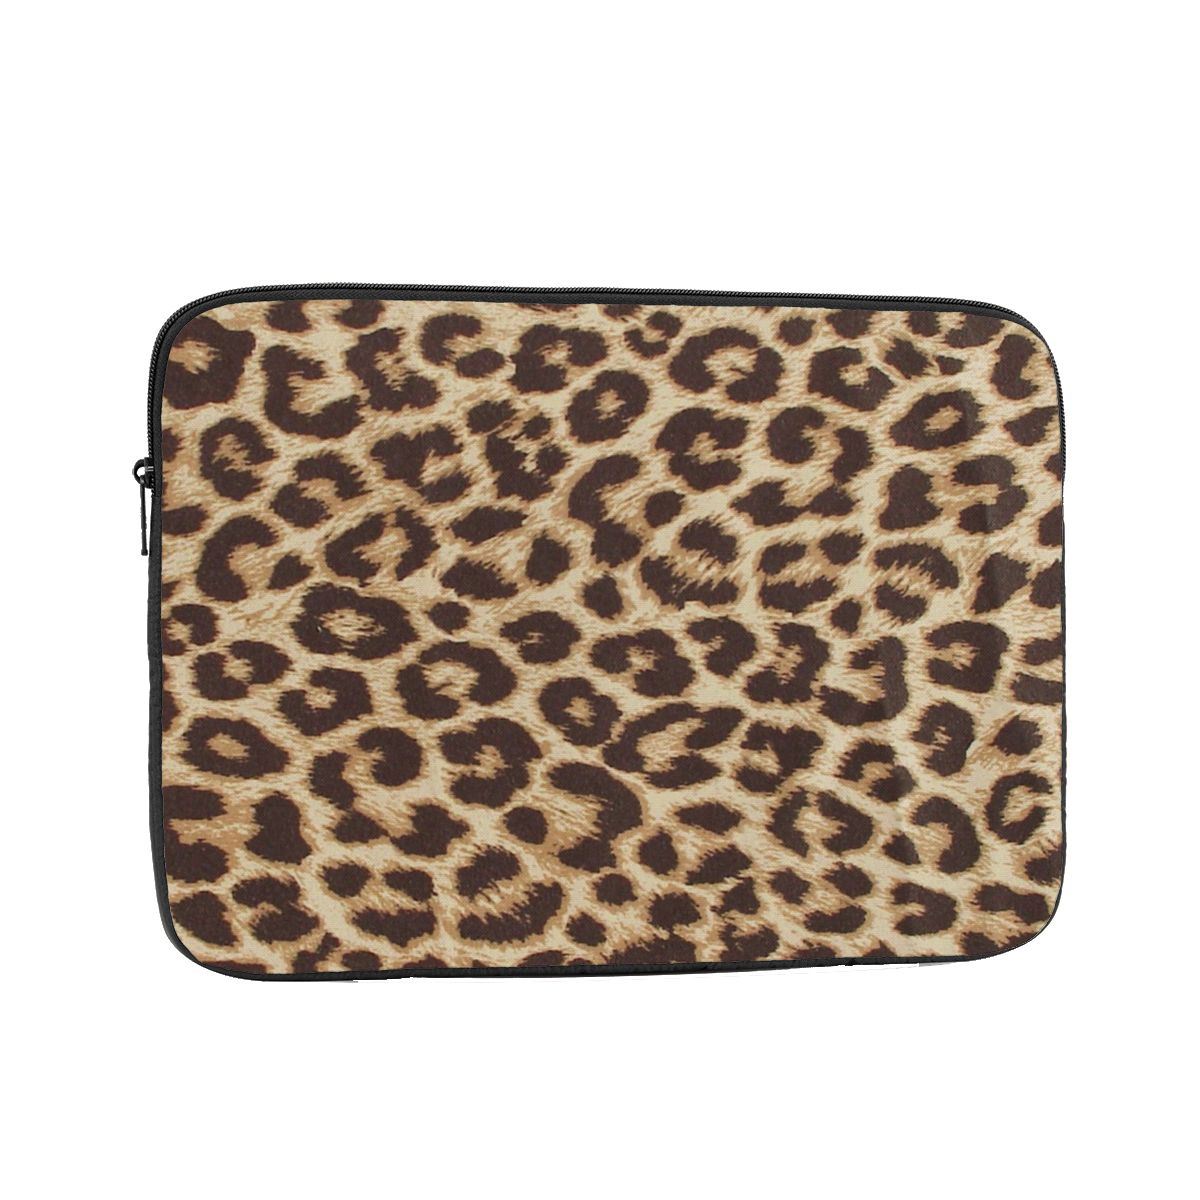 Zíper portátil notebook capa de manga saco leopardo impressão pele olhar